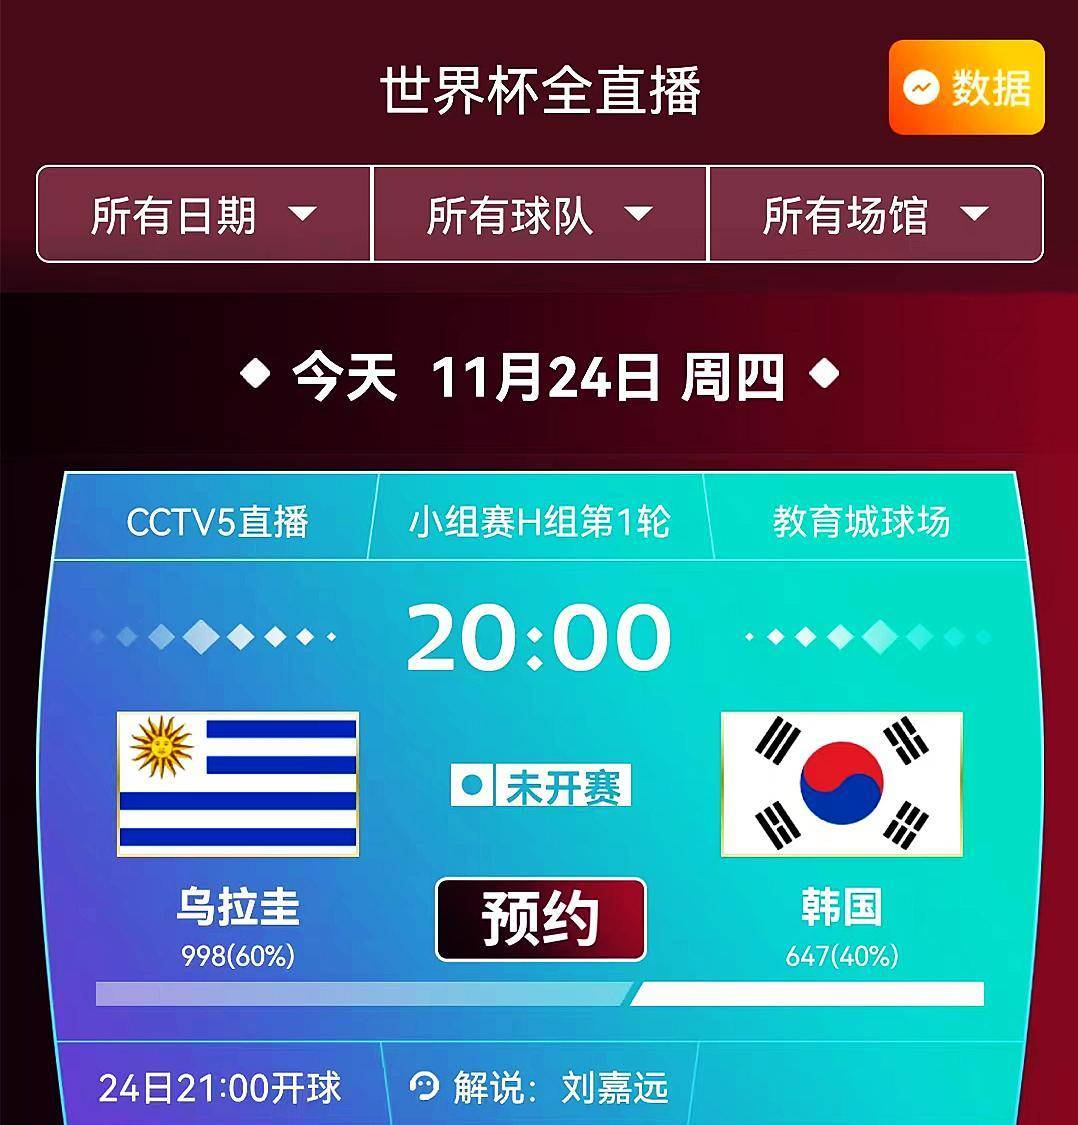 央视CCTV5曲播世界杯 韩国出战乌拉圭 看韩国能否延续亚洲足球骄傲